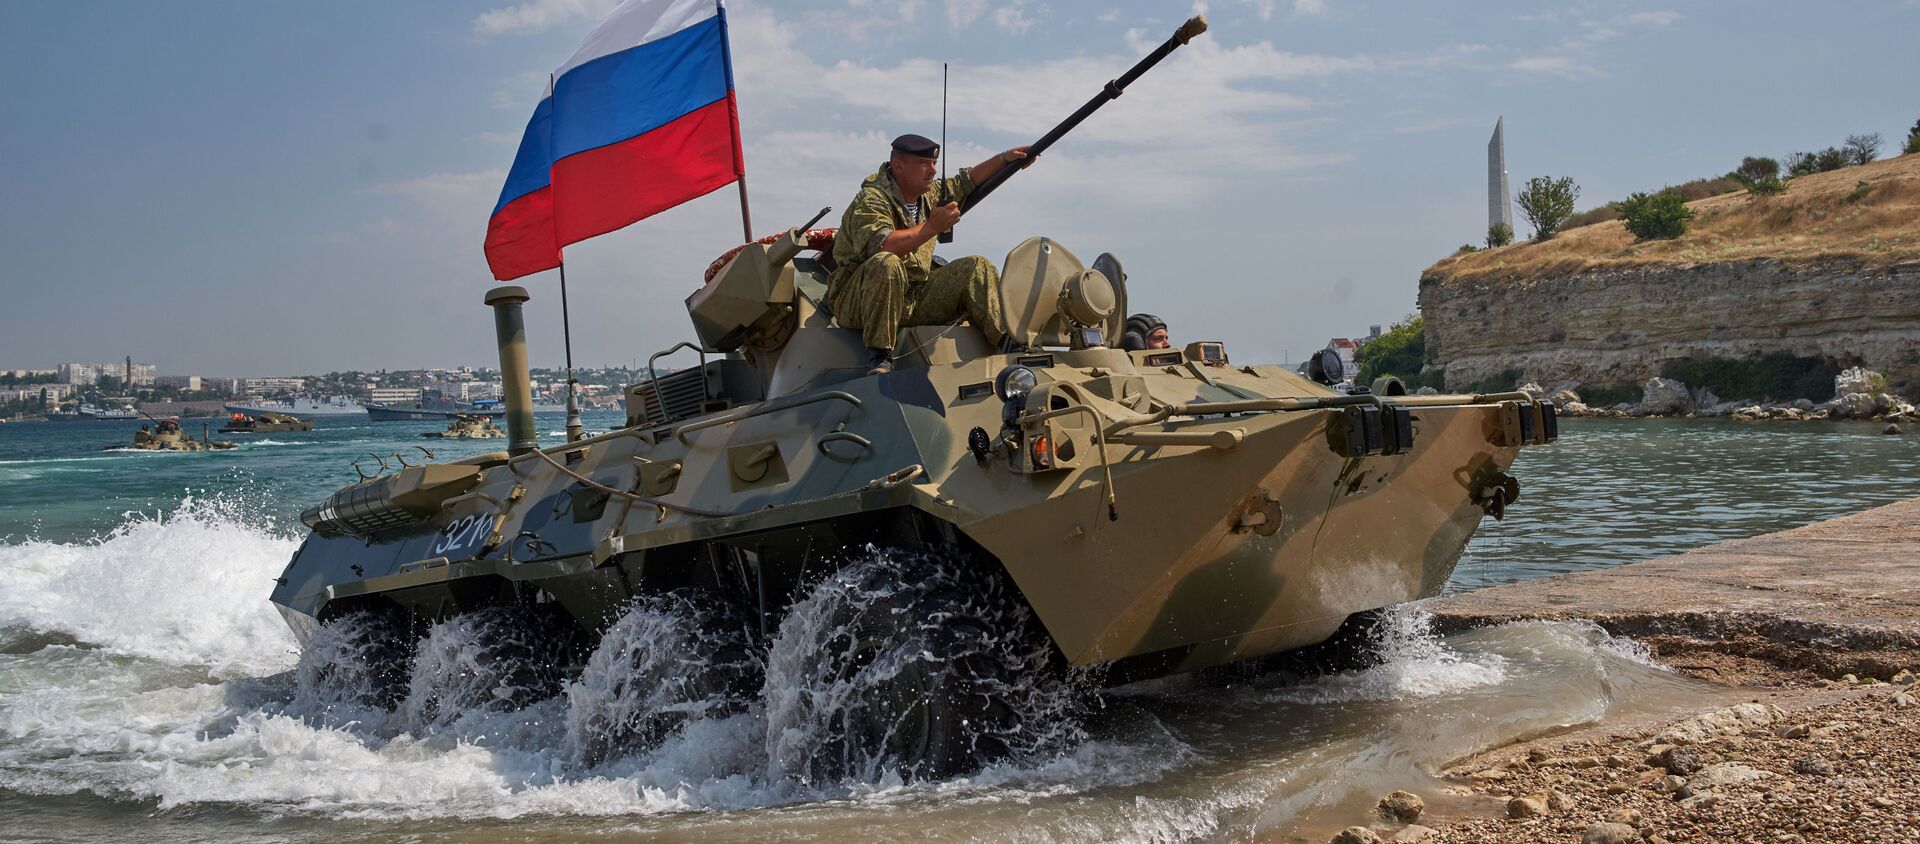 Sevastopol. Xe vận tải bọc thép của thủy quân lục chiến Hạm đội Biển Đen BTR 82A trong cuộc tổng duyệt chương trình biểu diễn quân sự cho Ngày Hải quân Nga. - Sputnik Việt Nam, 1920, 02.08.2018